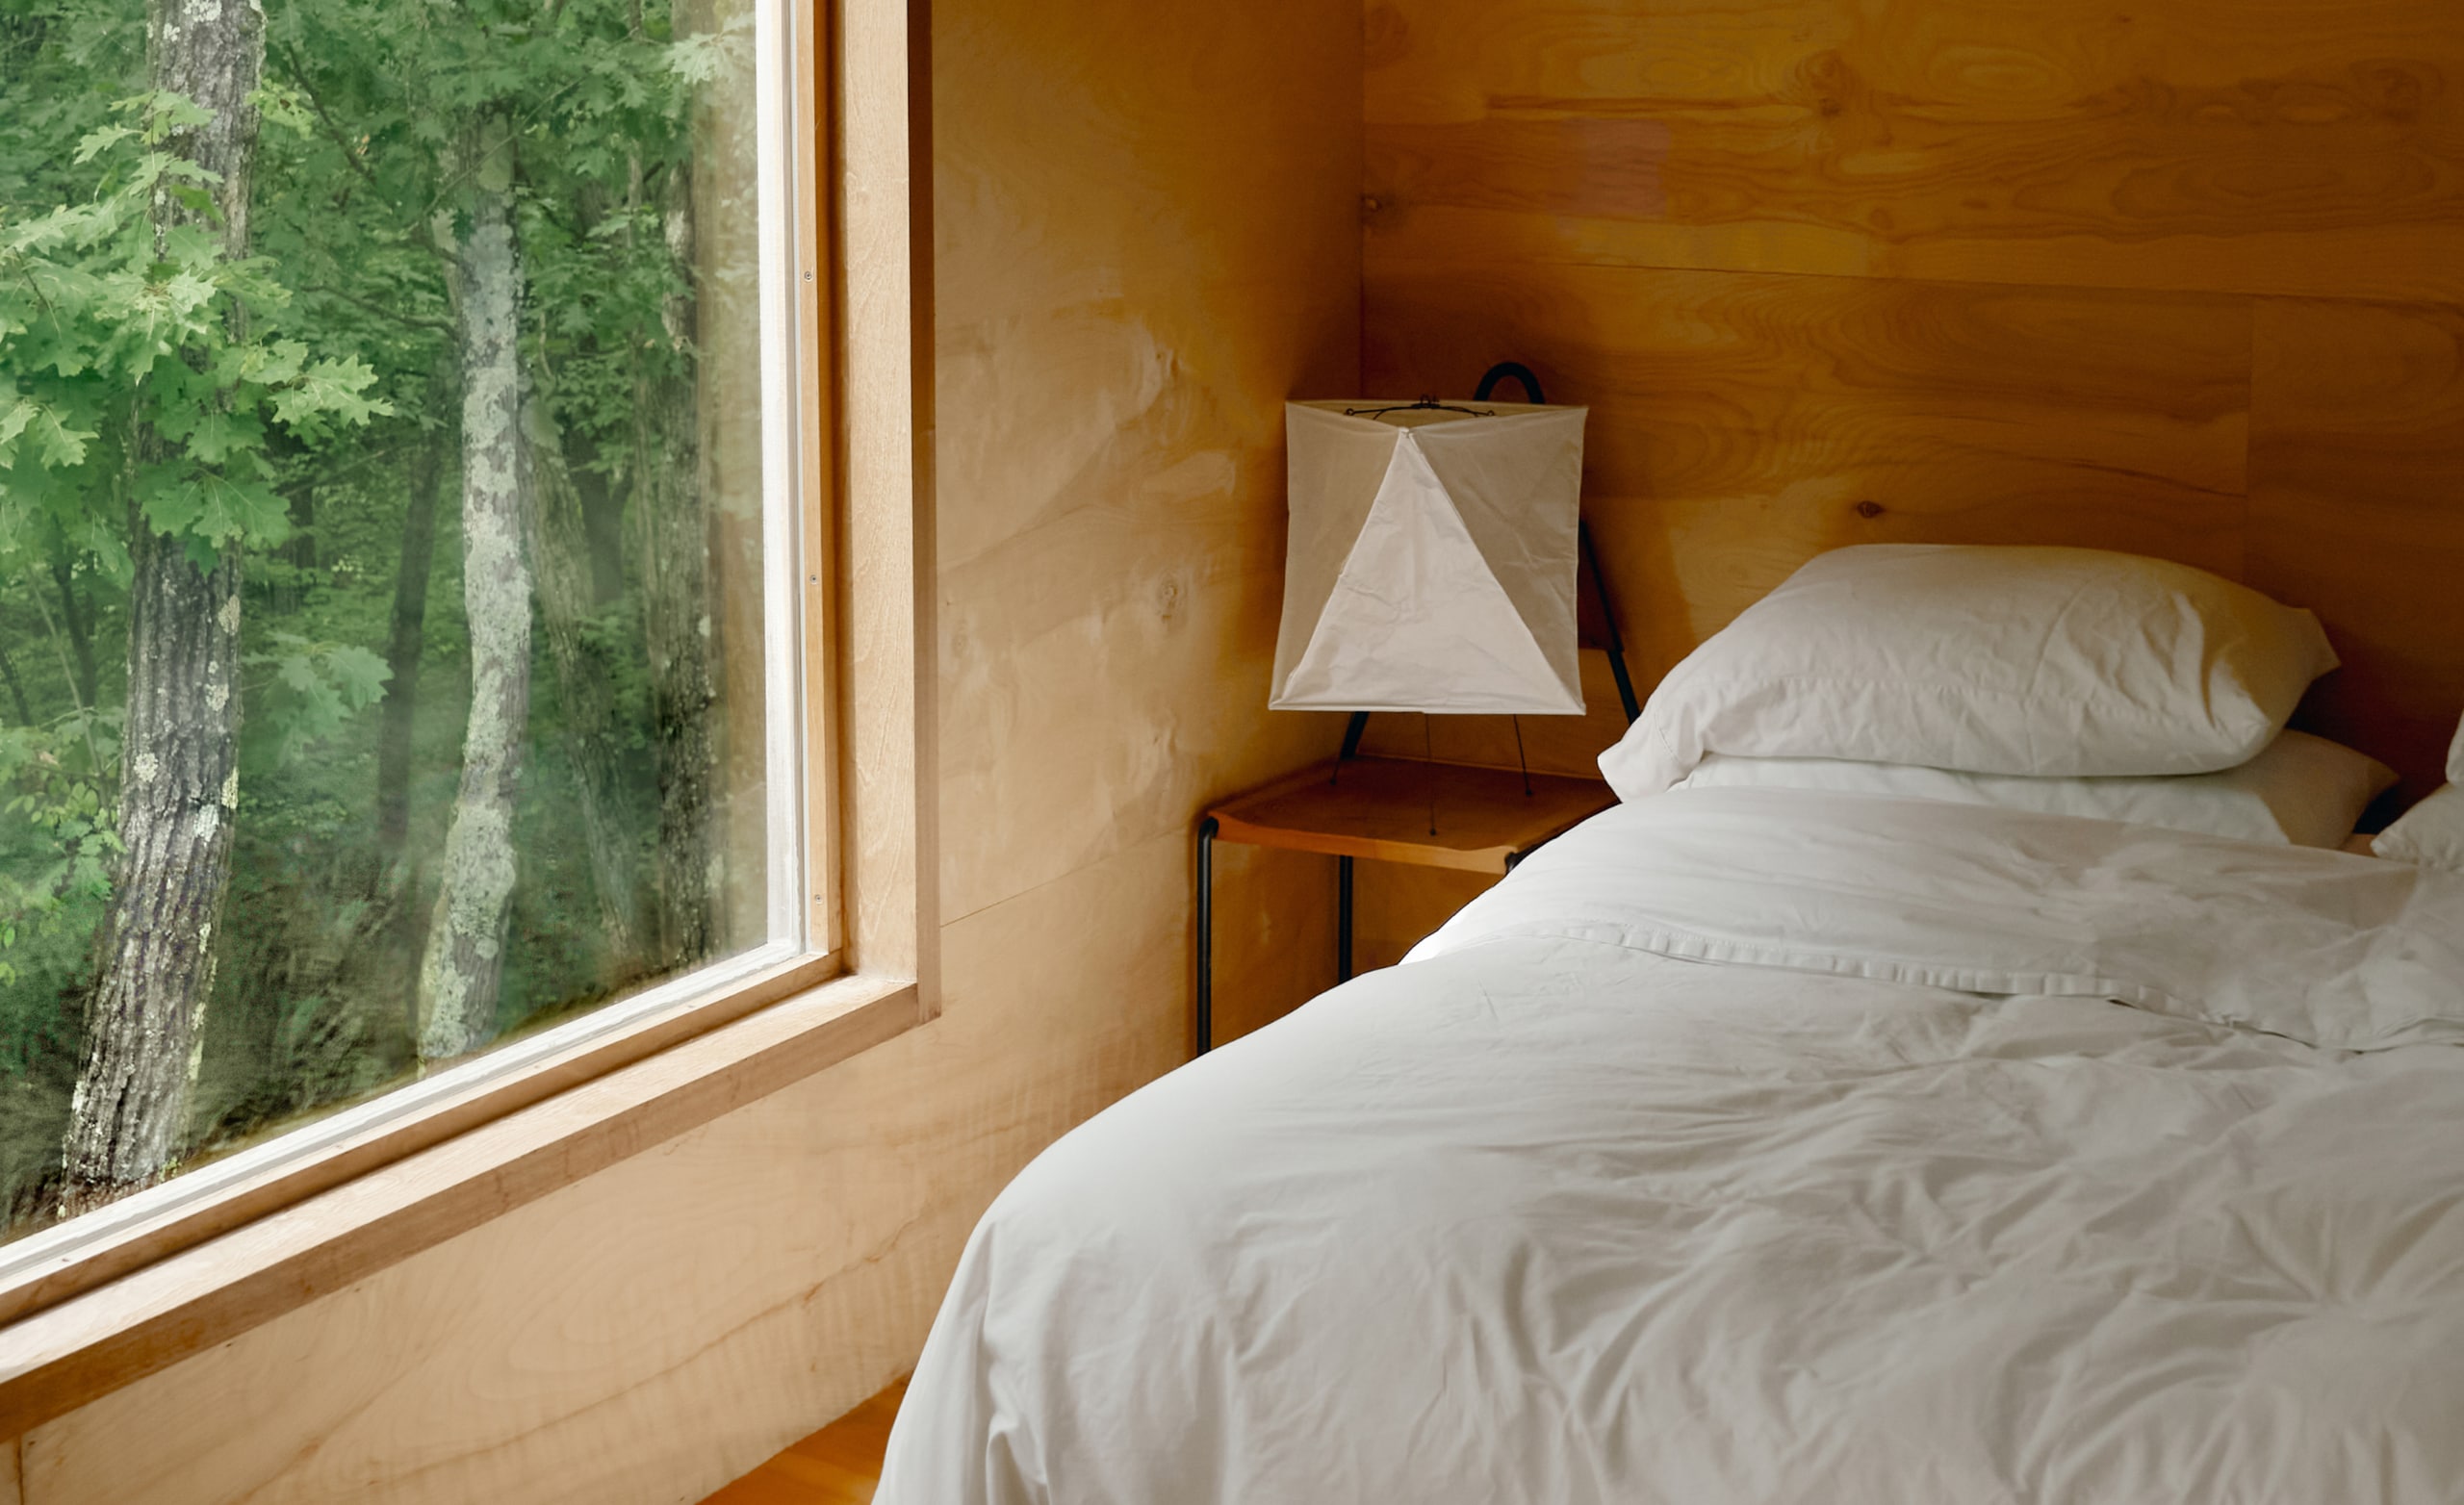 Un dormitor cu cearșafuri albe pe un pat proaspăt făcut și o fereastră mare prin care se văd copacii de afară.